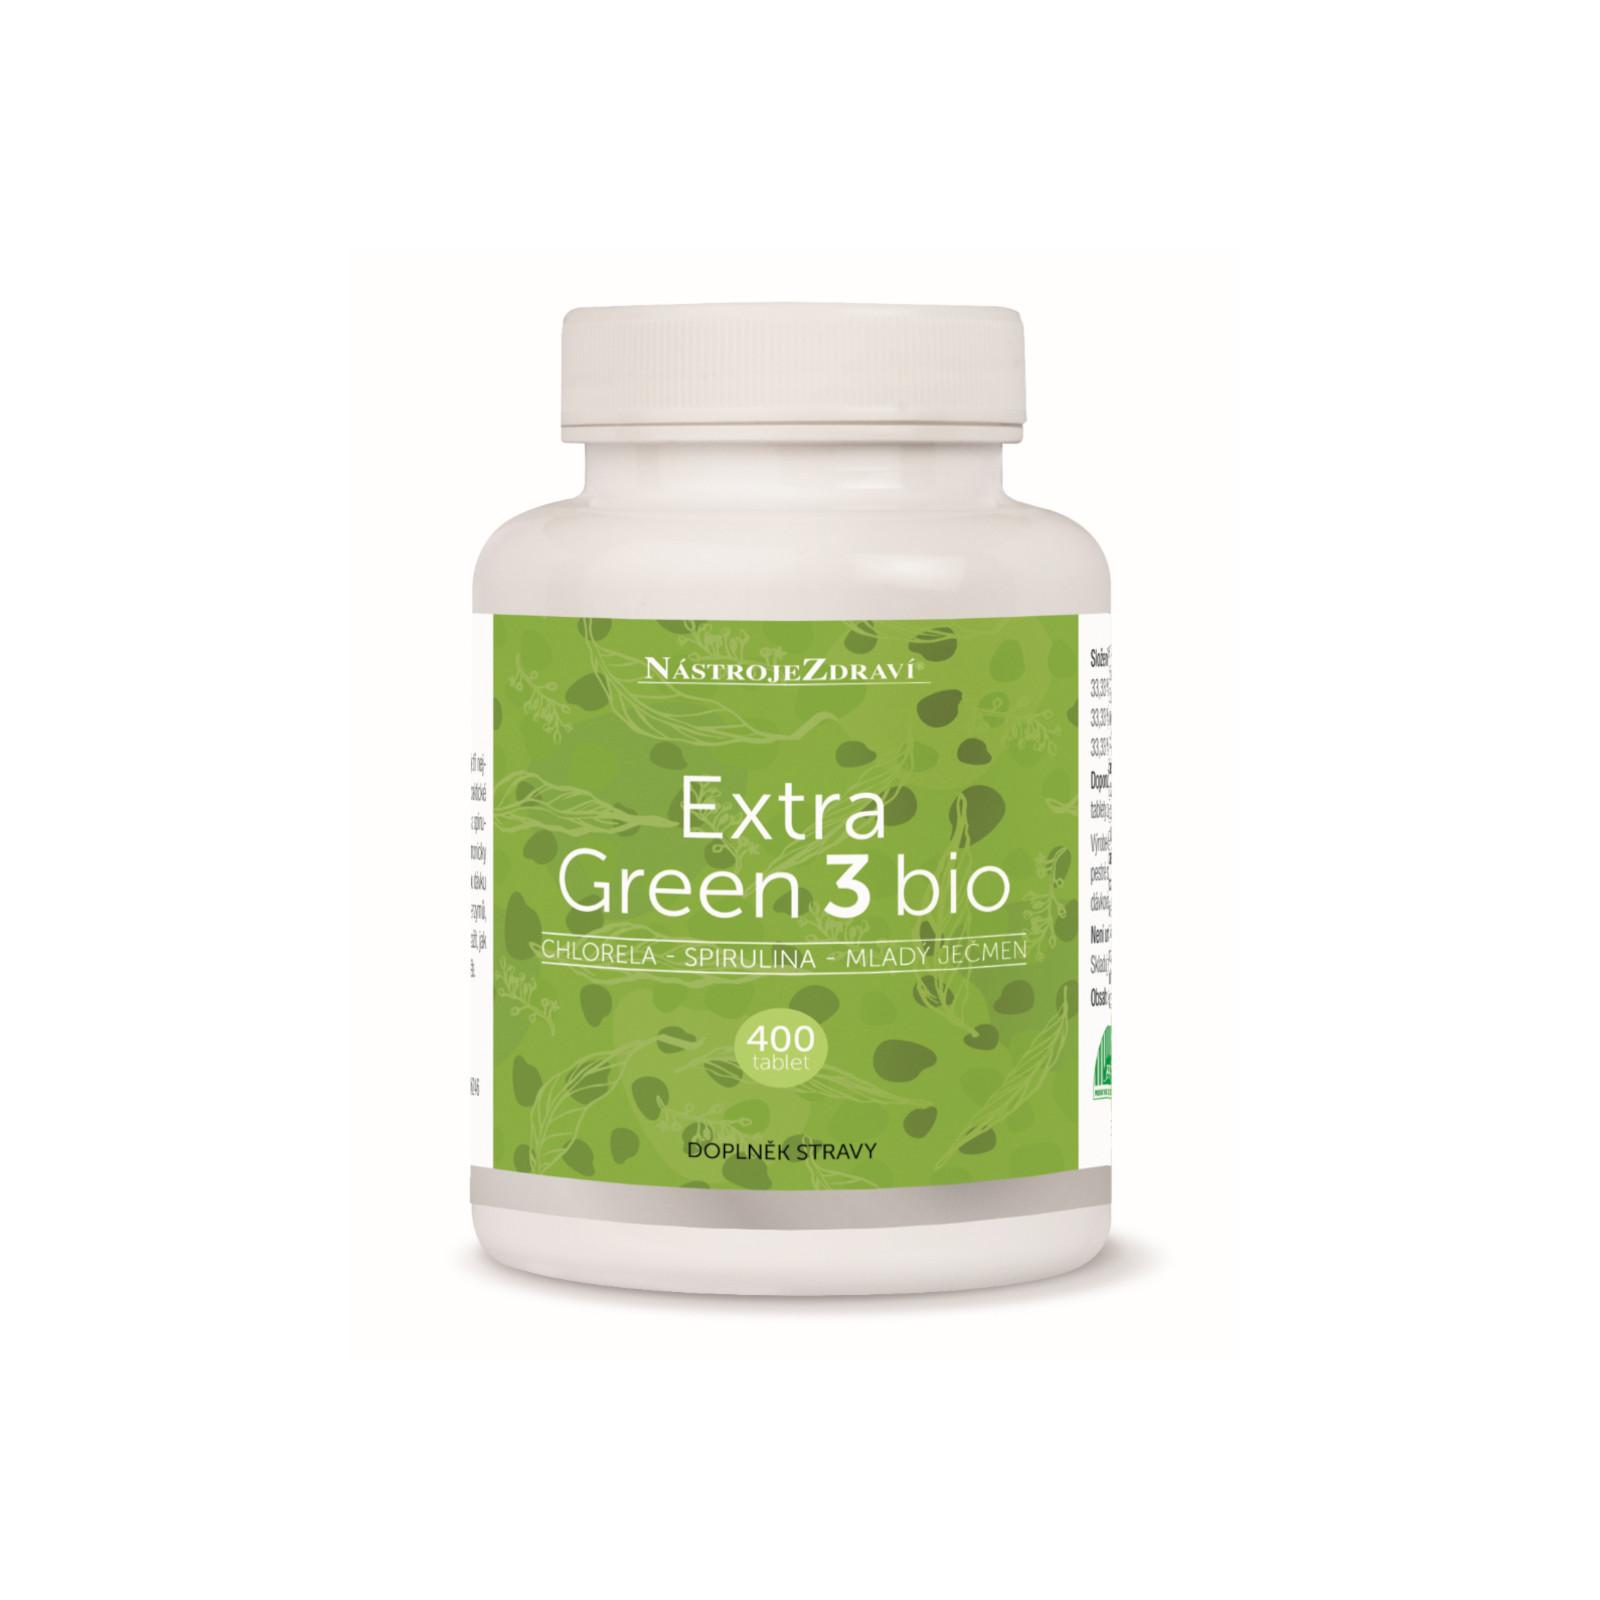 Nástroje Zdraví Extra green 3 Bio chlorella, spirulina, mladý ječmen, tablety 400 ks, 100 g